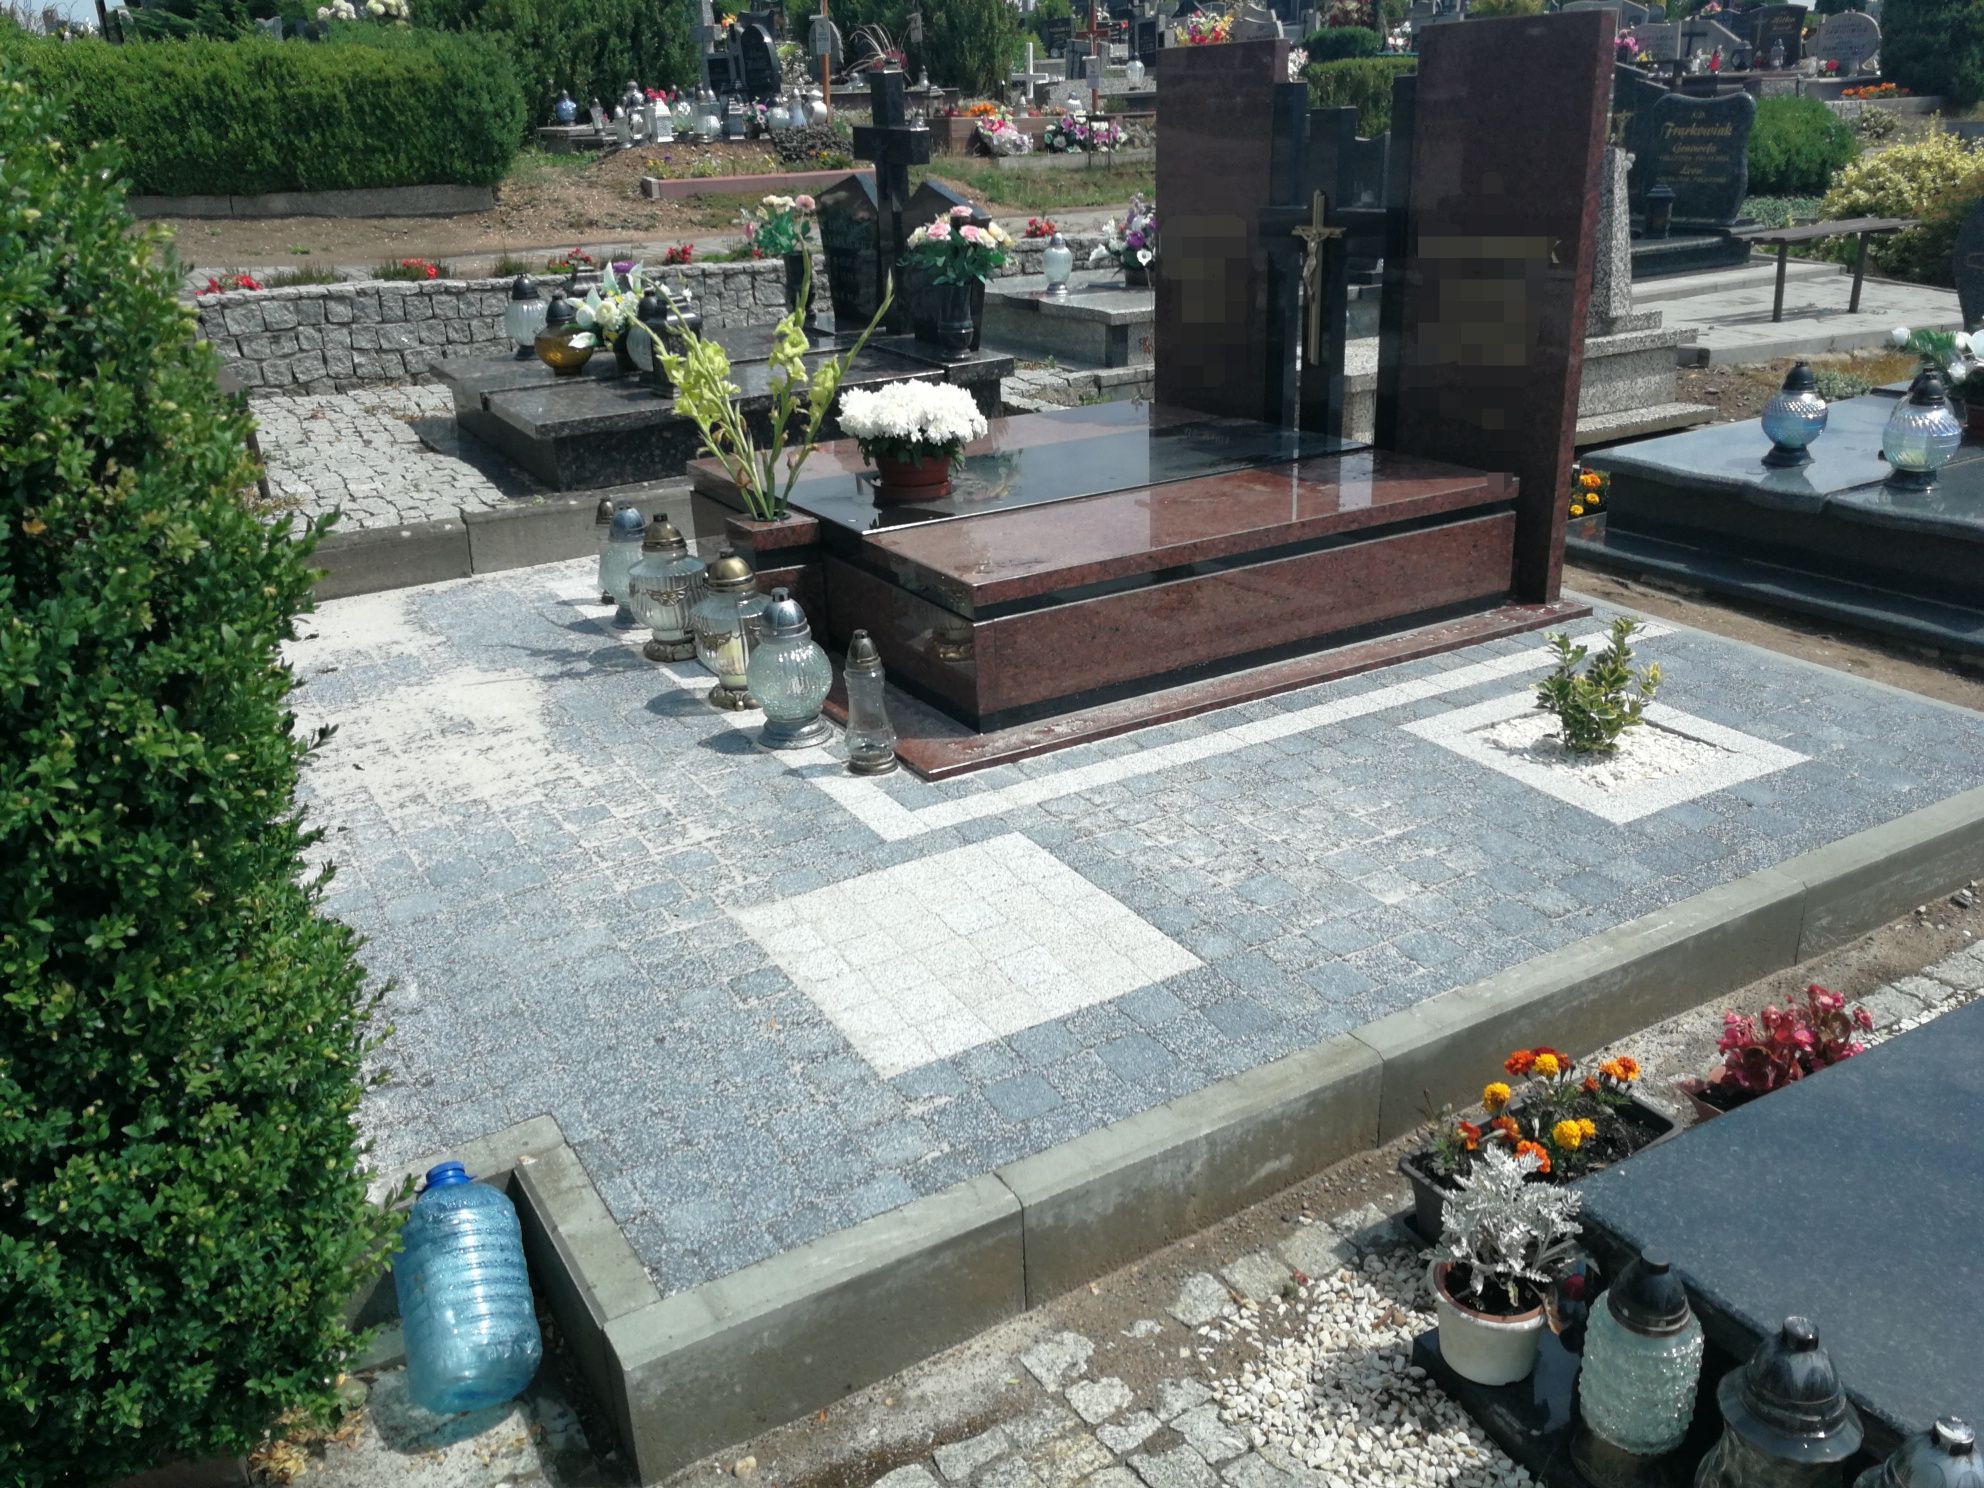 Kostka wokół grobów na cmentarzu/podnoszenie zapadniętych nagrobkow